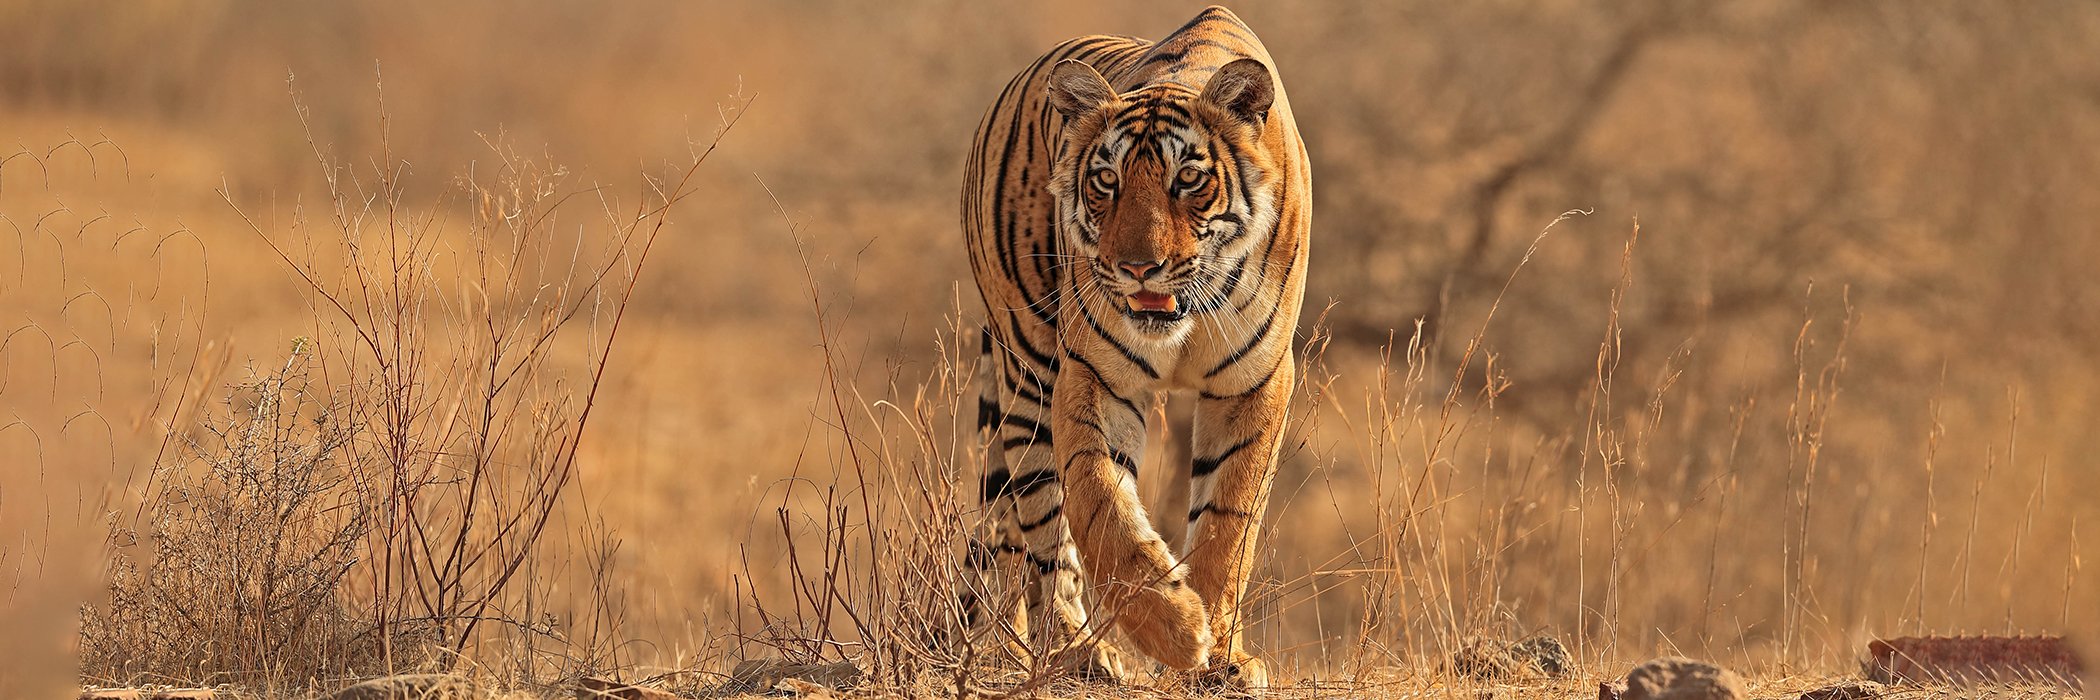 Bengal tiger male stalking